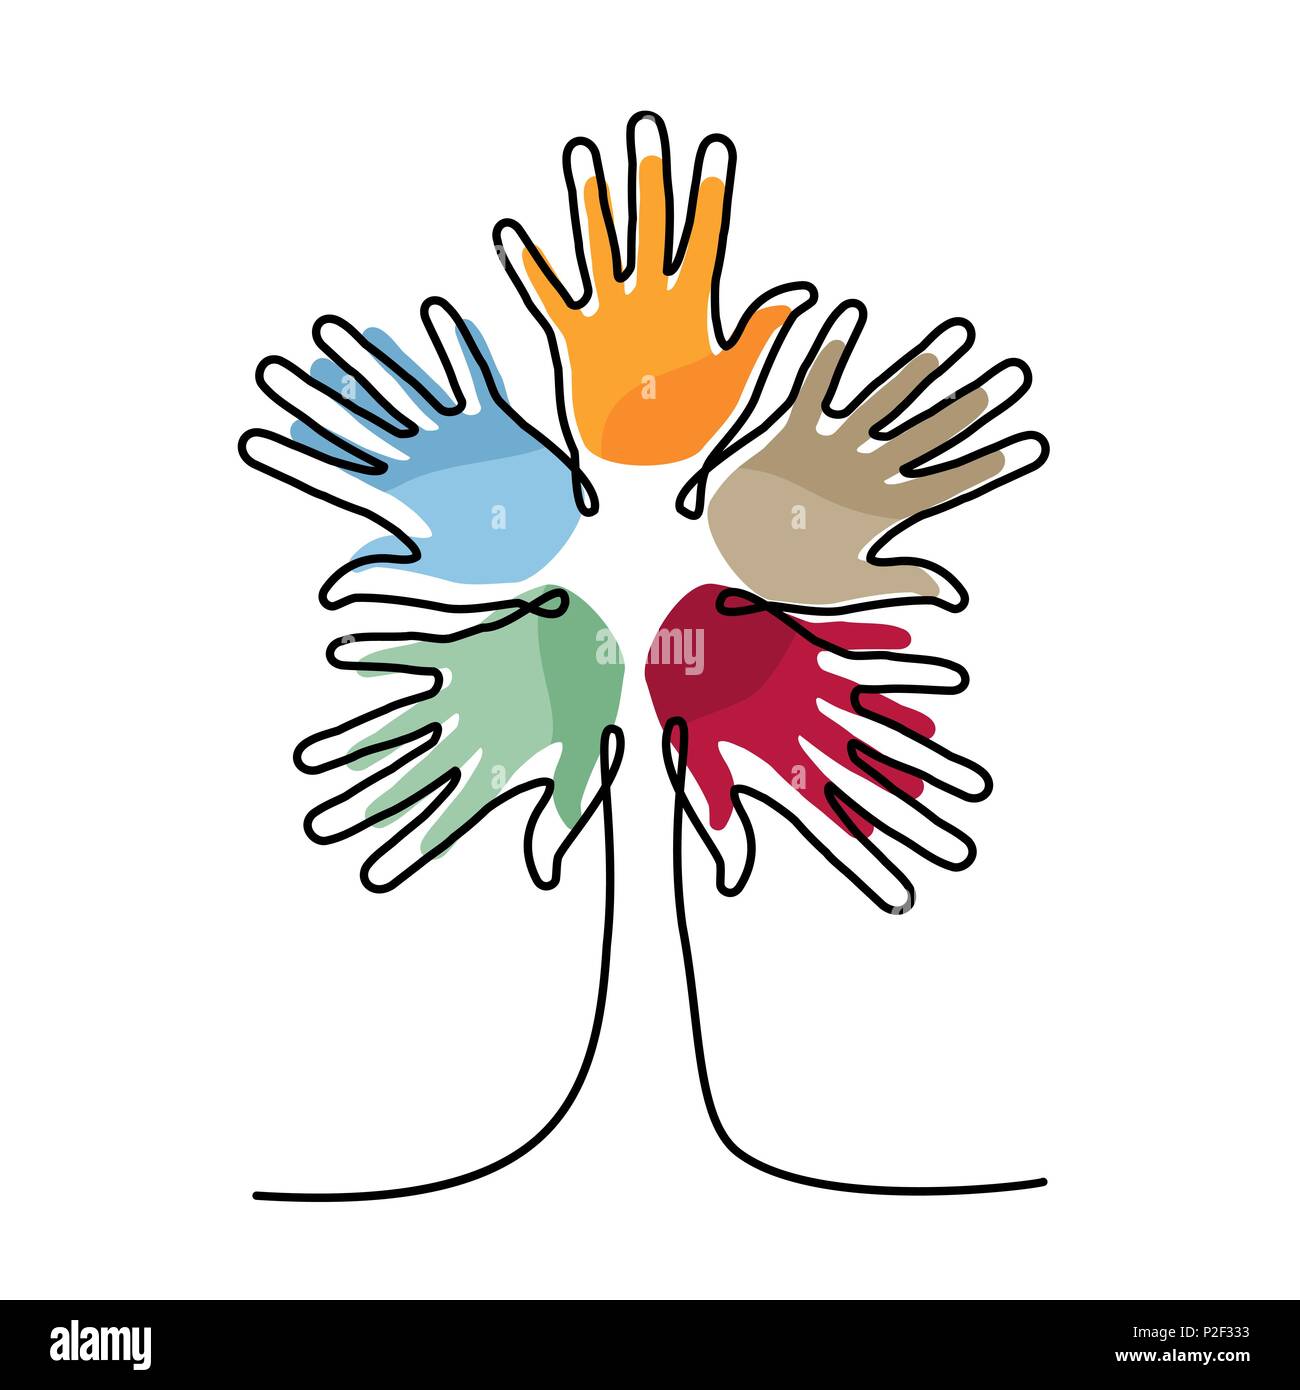 Arborescence constituée de mains humaines colorées en une seule ligne continue. Concept idée pour aider la communauté, projet de charité ou événement culturel. Vecteur EPS10. Illustration de Vecteur